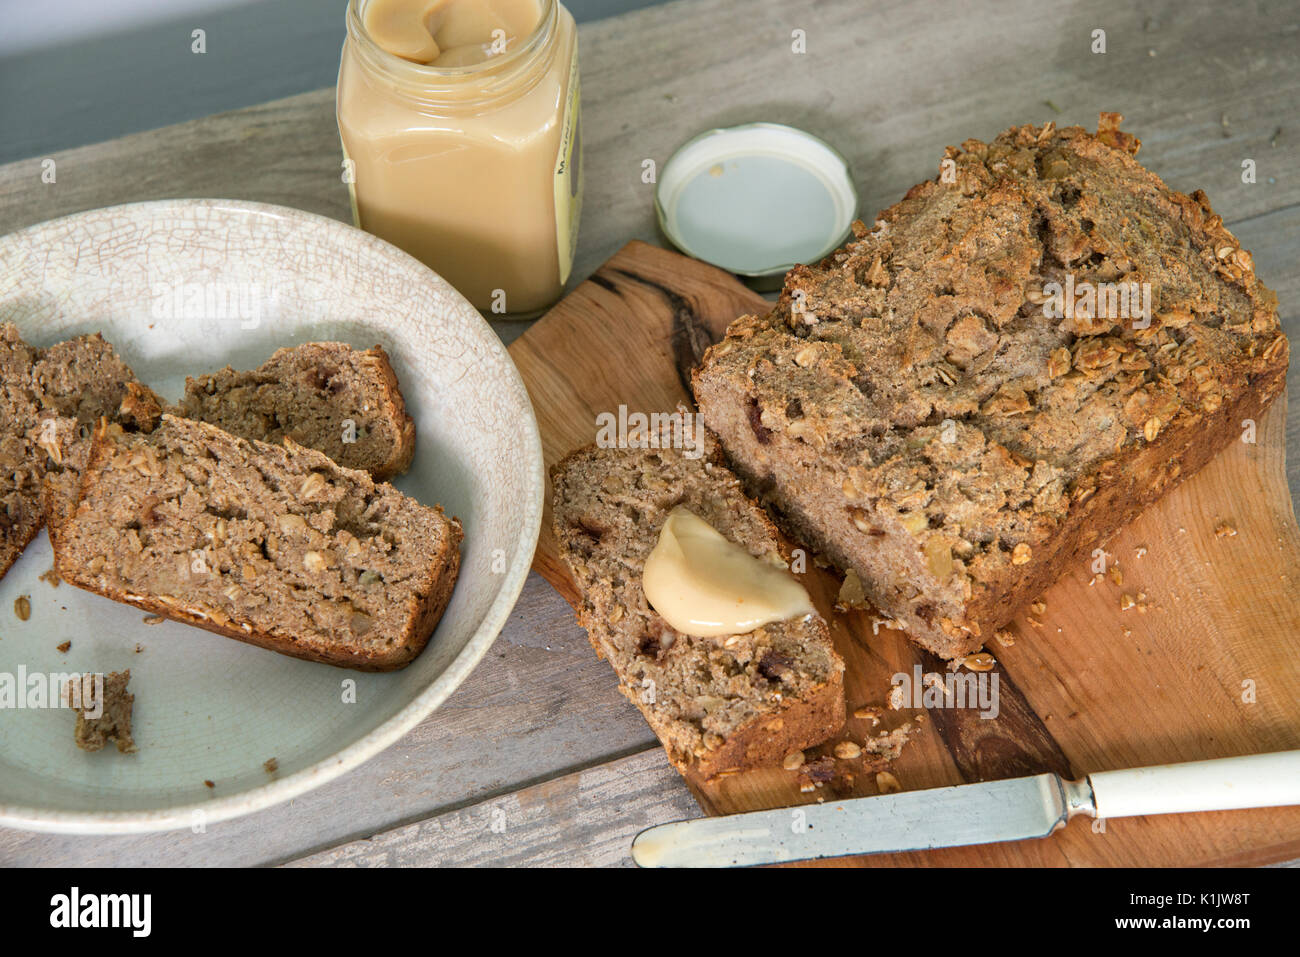 Pan de banana con miel y frutos secos Foto de stock